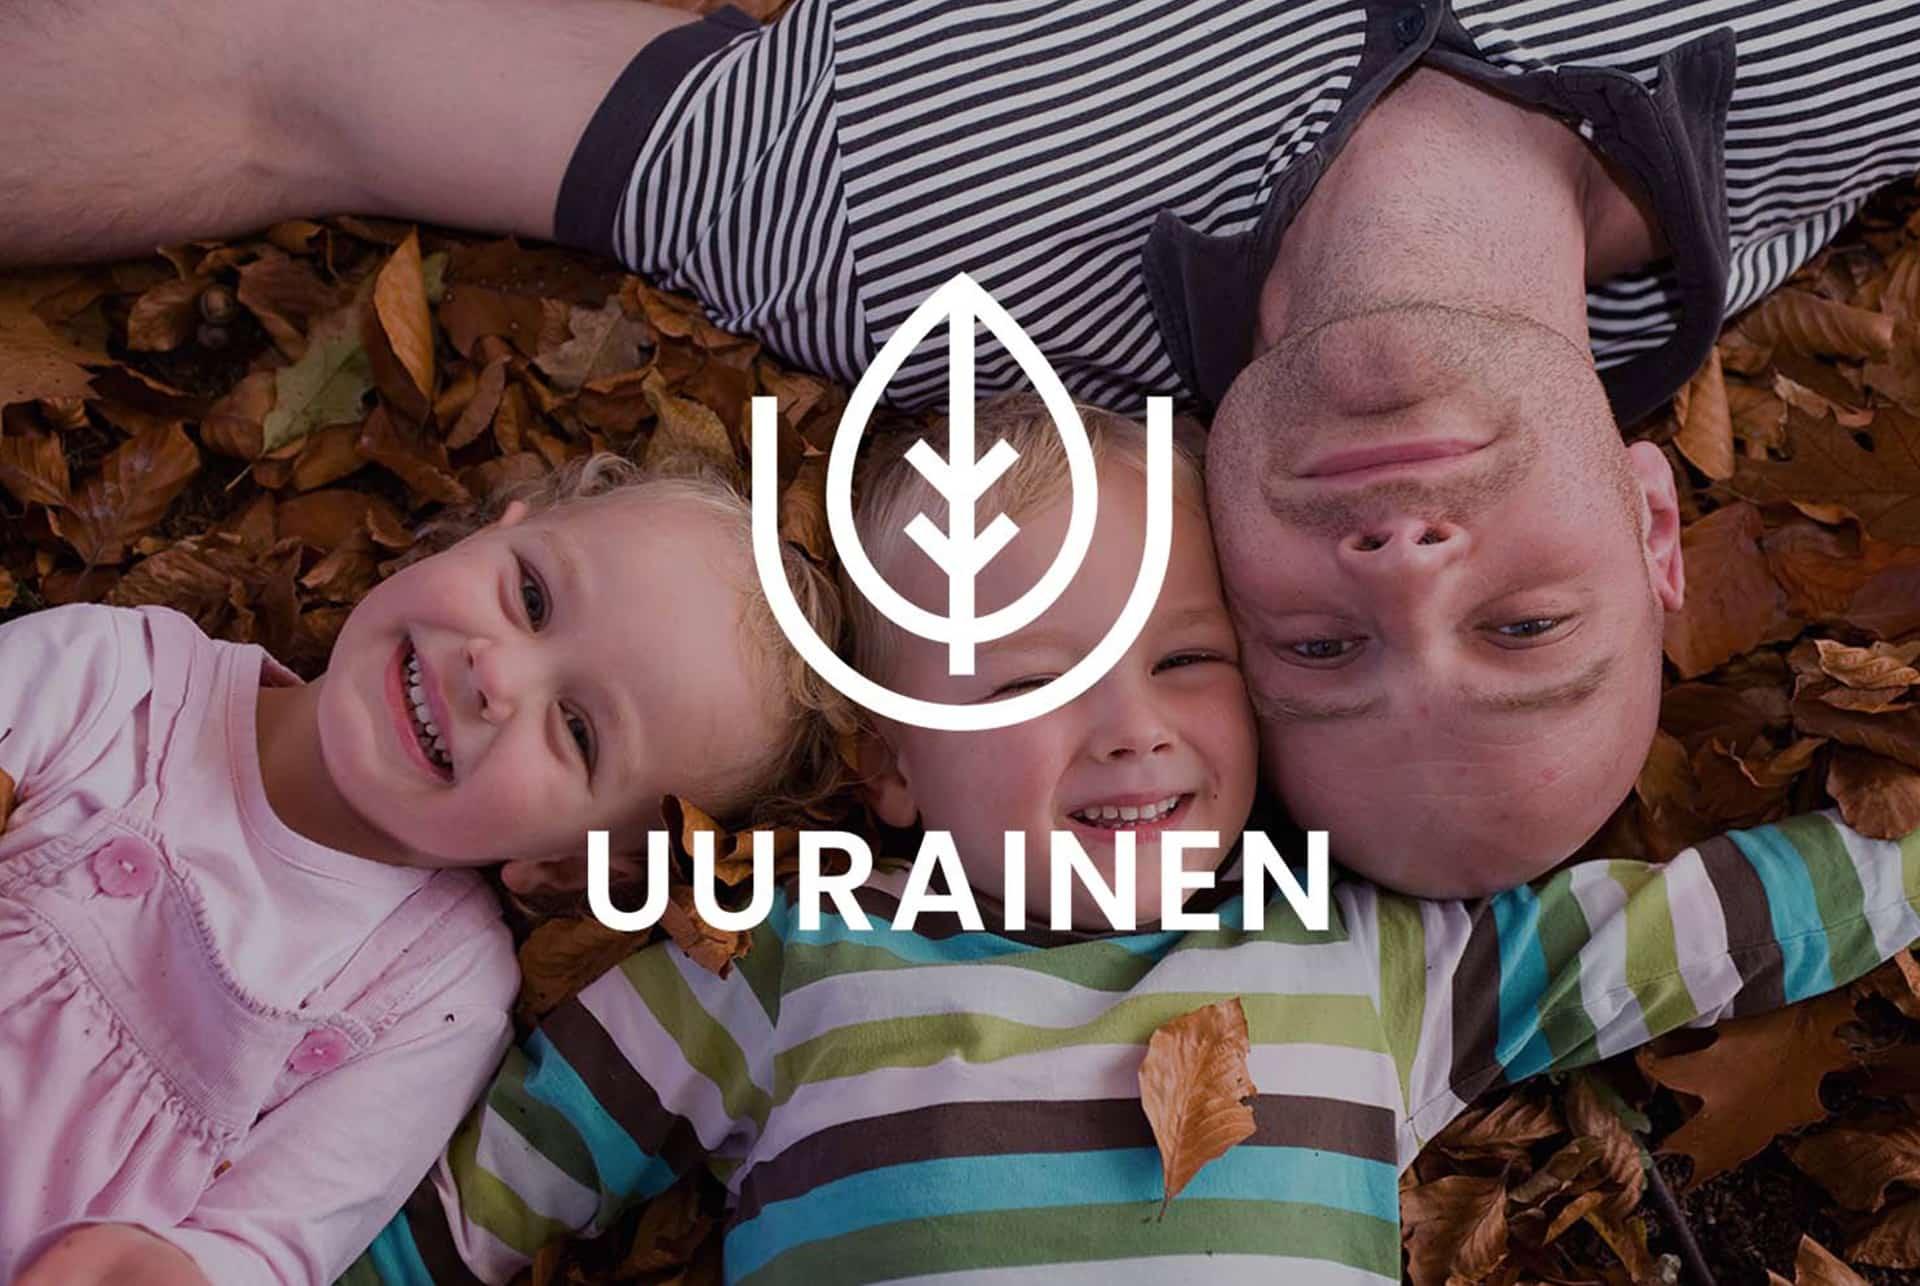 Kaksi lasta ja aikuinen makaavat lehtien päällä maassa ja hymyilevät kameralle, päällä Uuraisten kunnan logo.